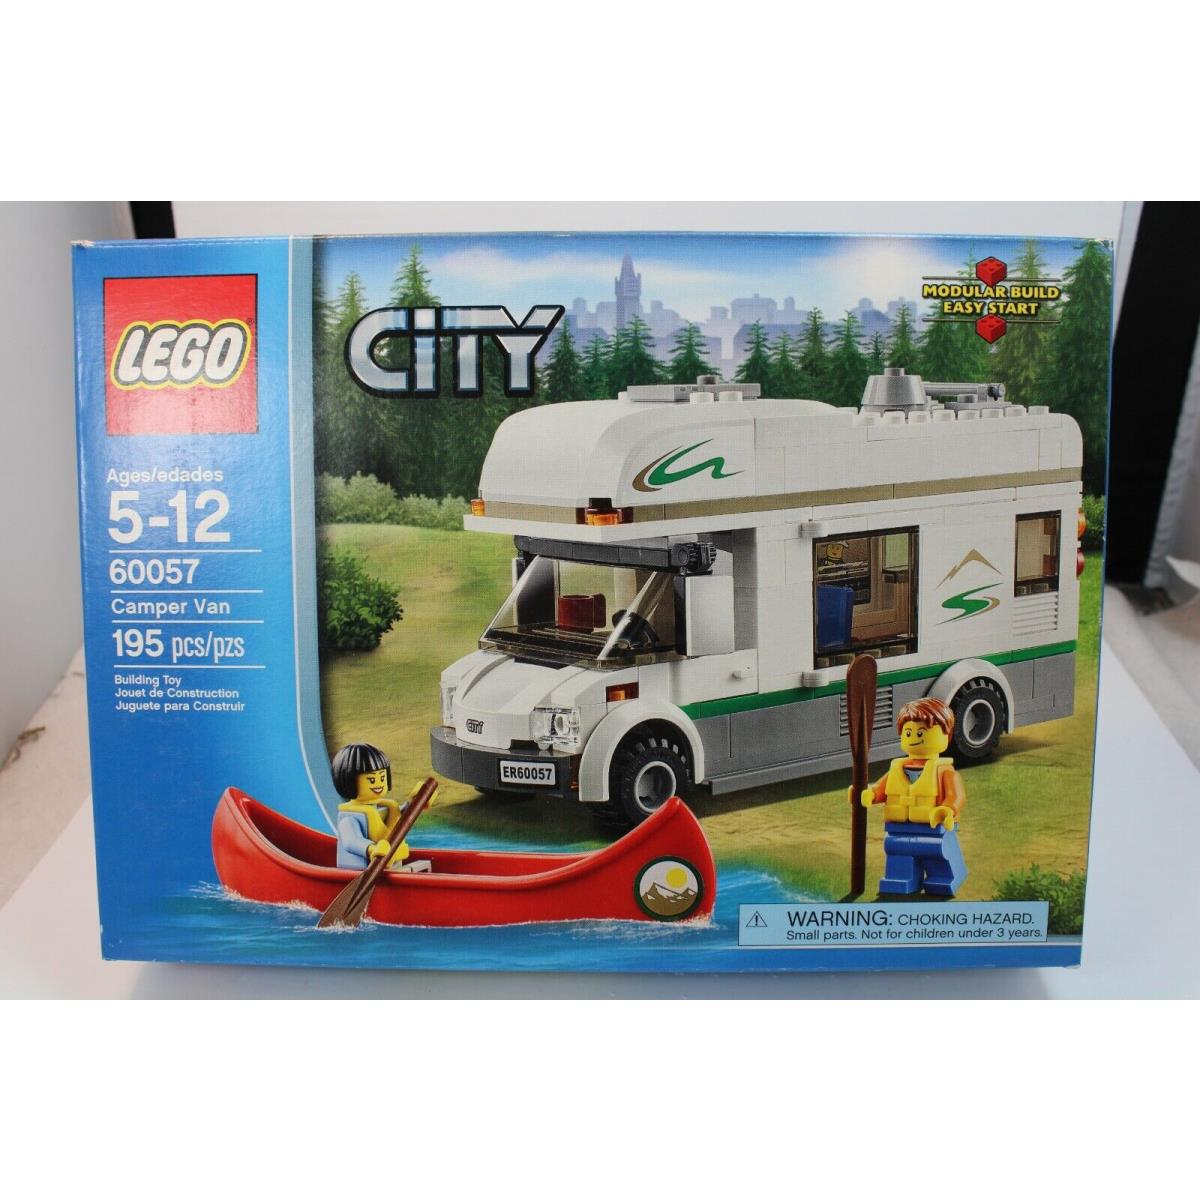 A2 Lego City Complete Set 60057 Camper Van